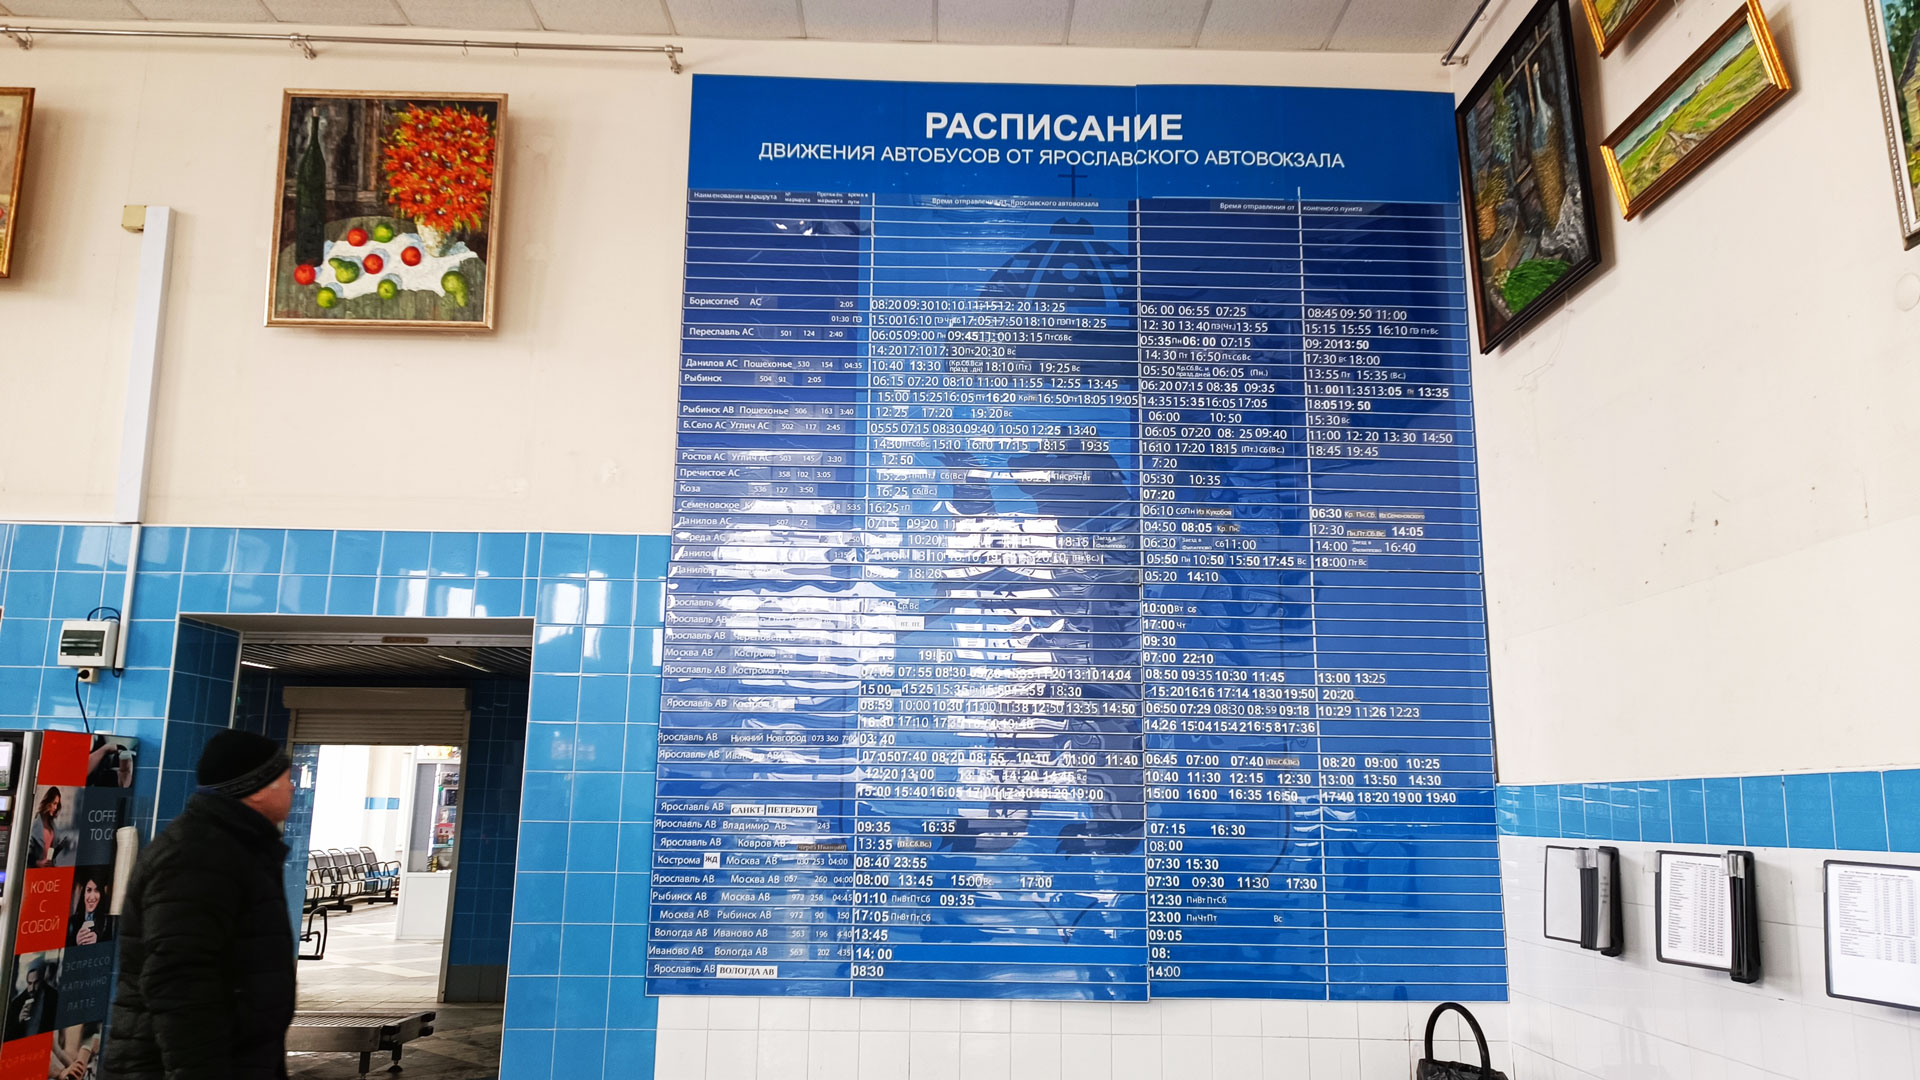 Автовокзал Ярославль: расписание автобусов. 